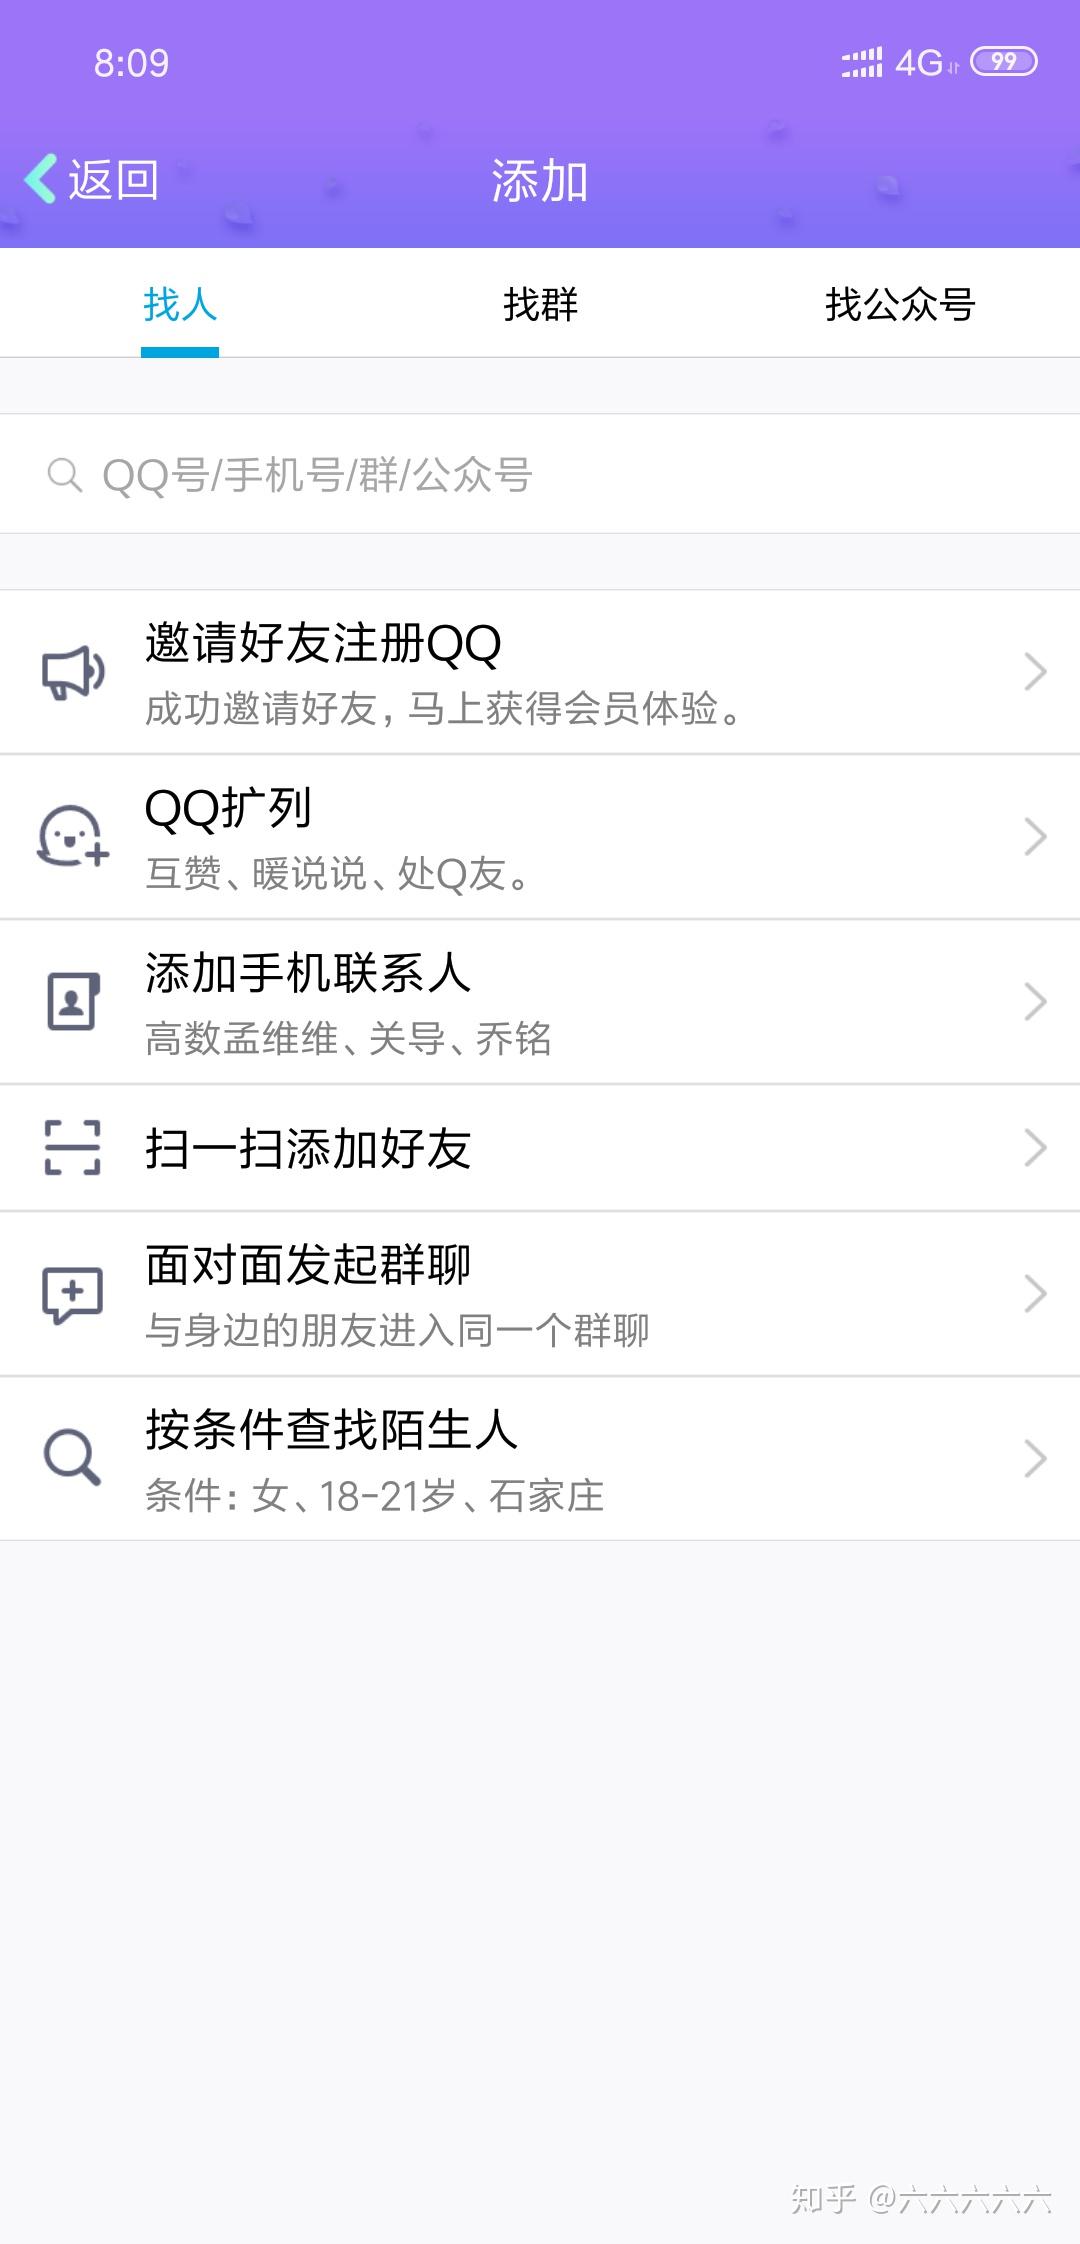 QQ注册有个邀请码,在哪里可以找到自己的邀请